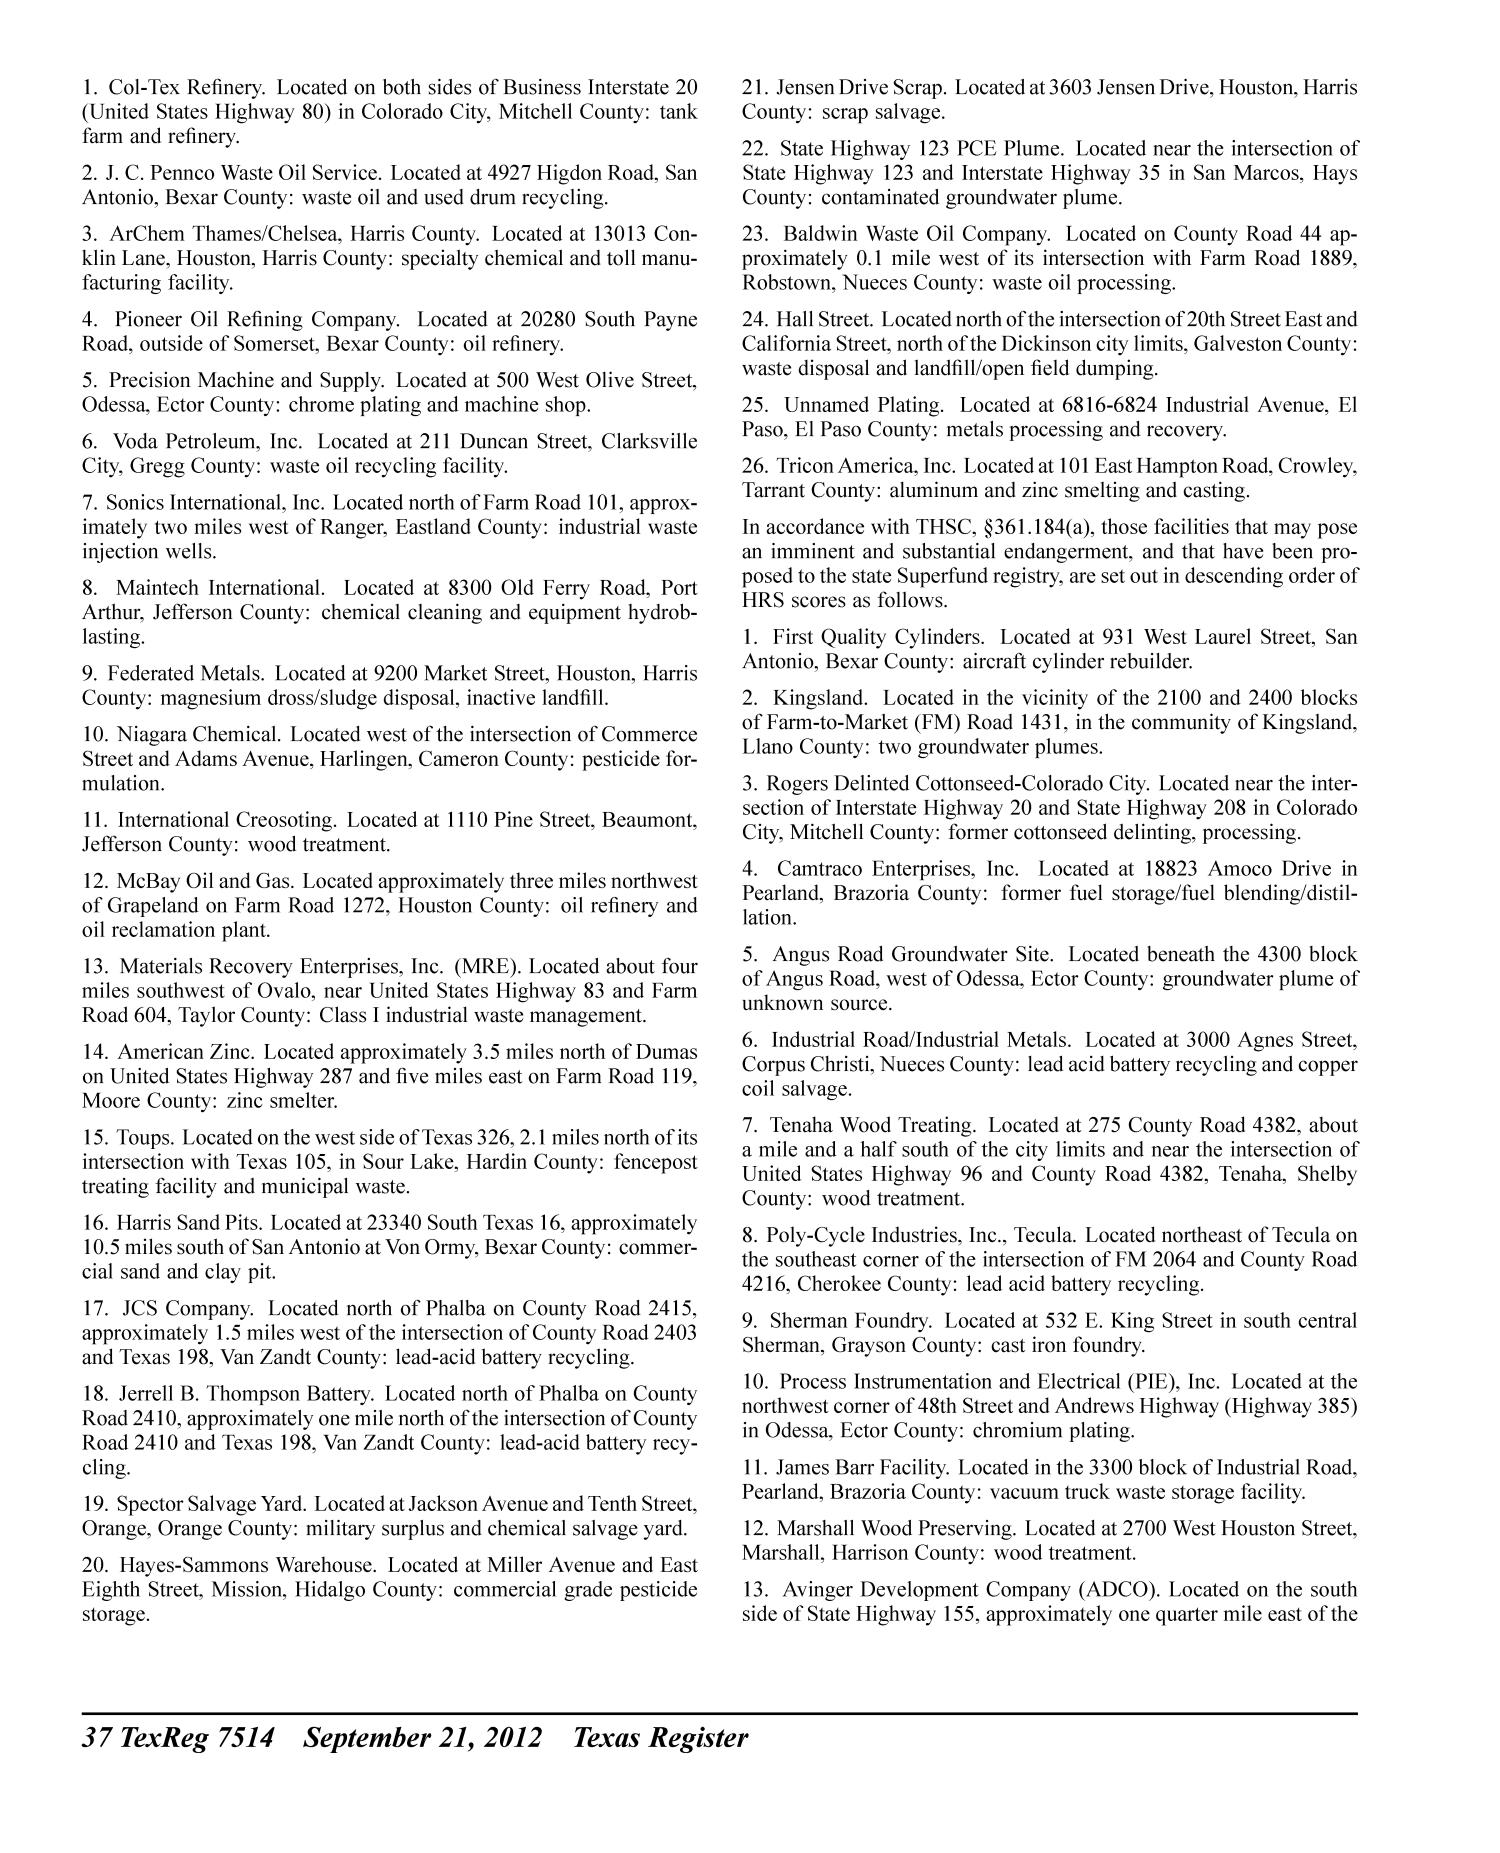 Texas Register, Volume 37, Number 38, Pages 7327-7532, September 21, 2012
                                                
                                                    7514
                                                